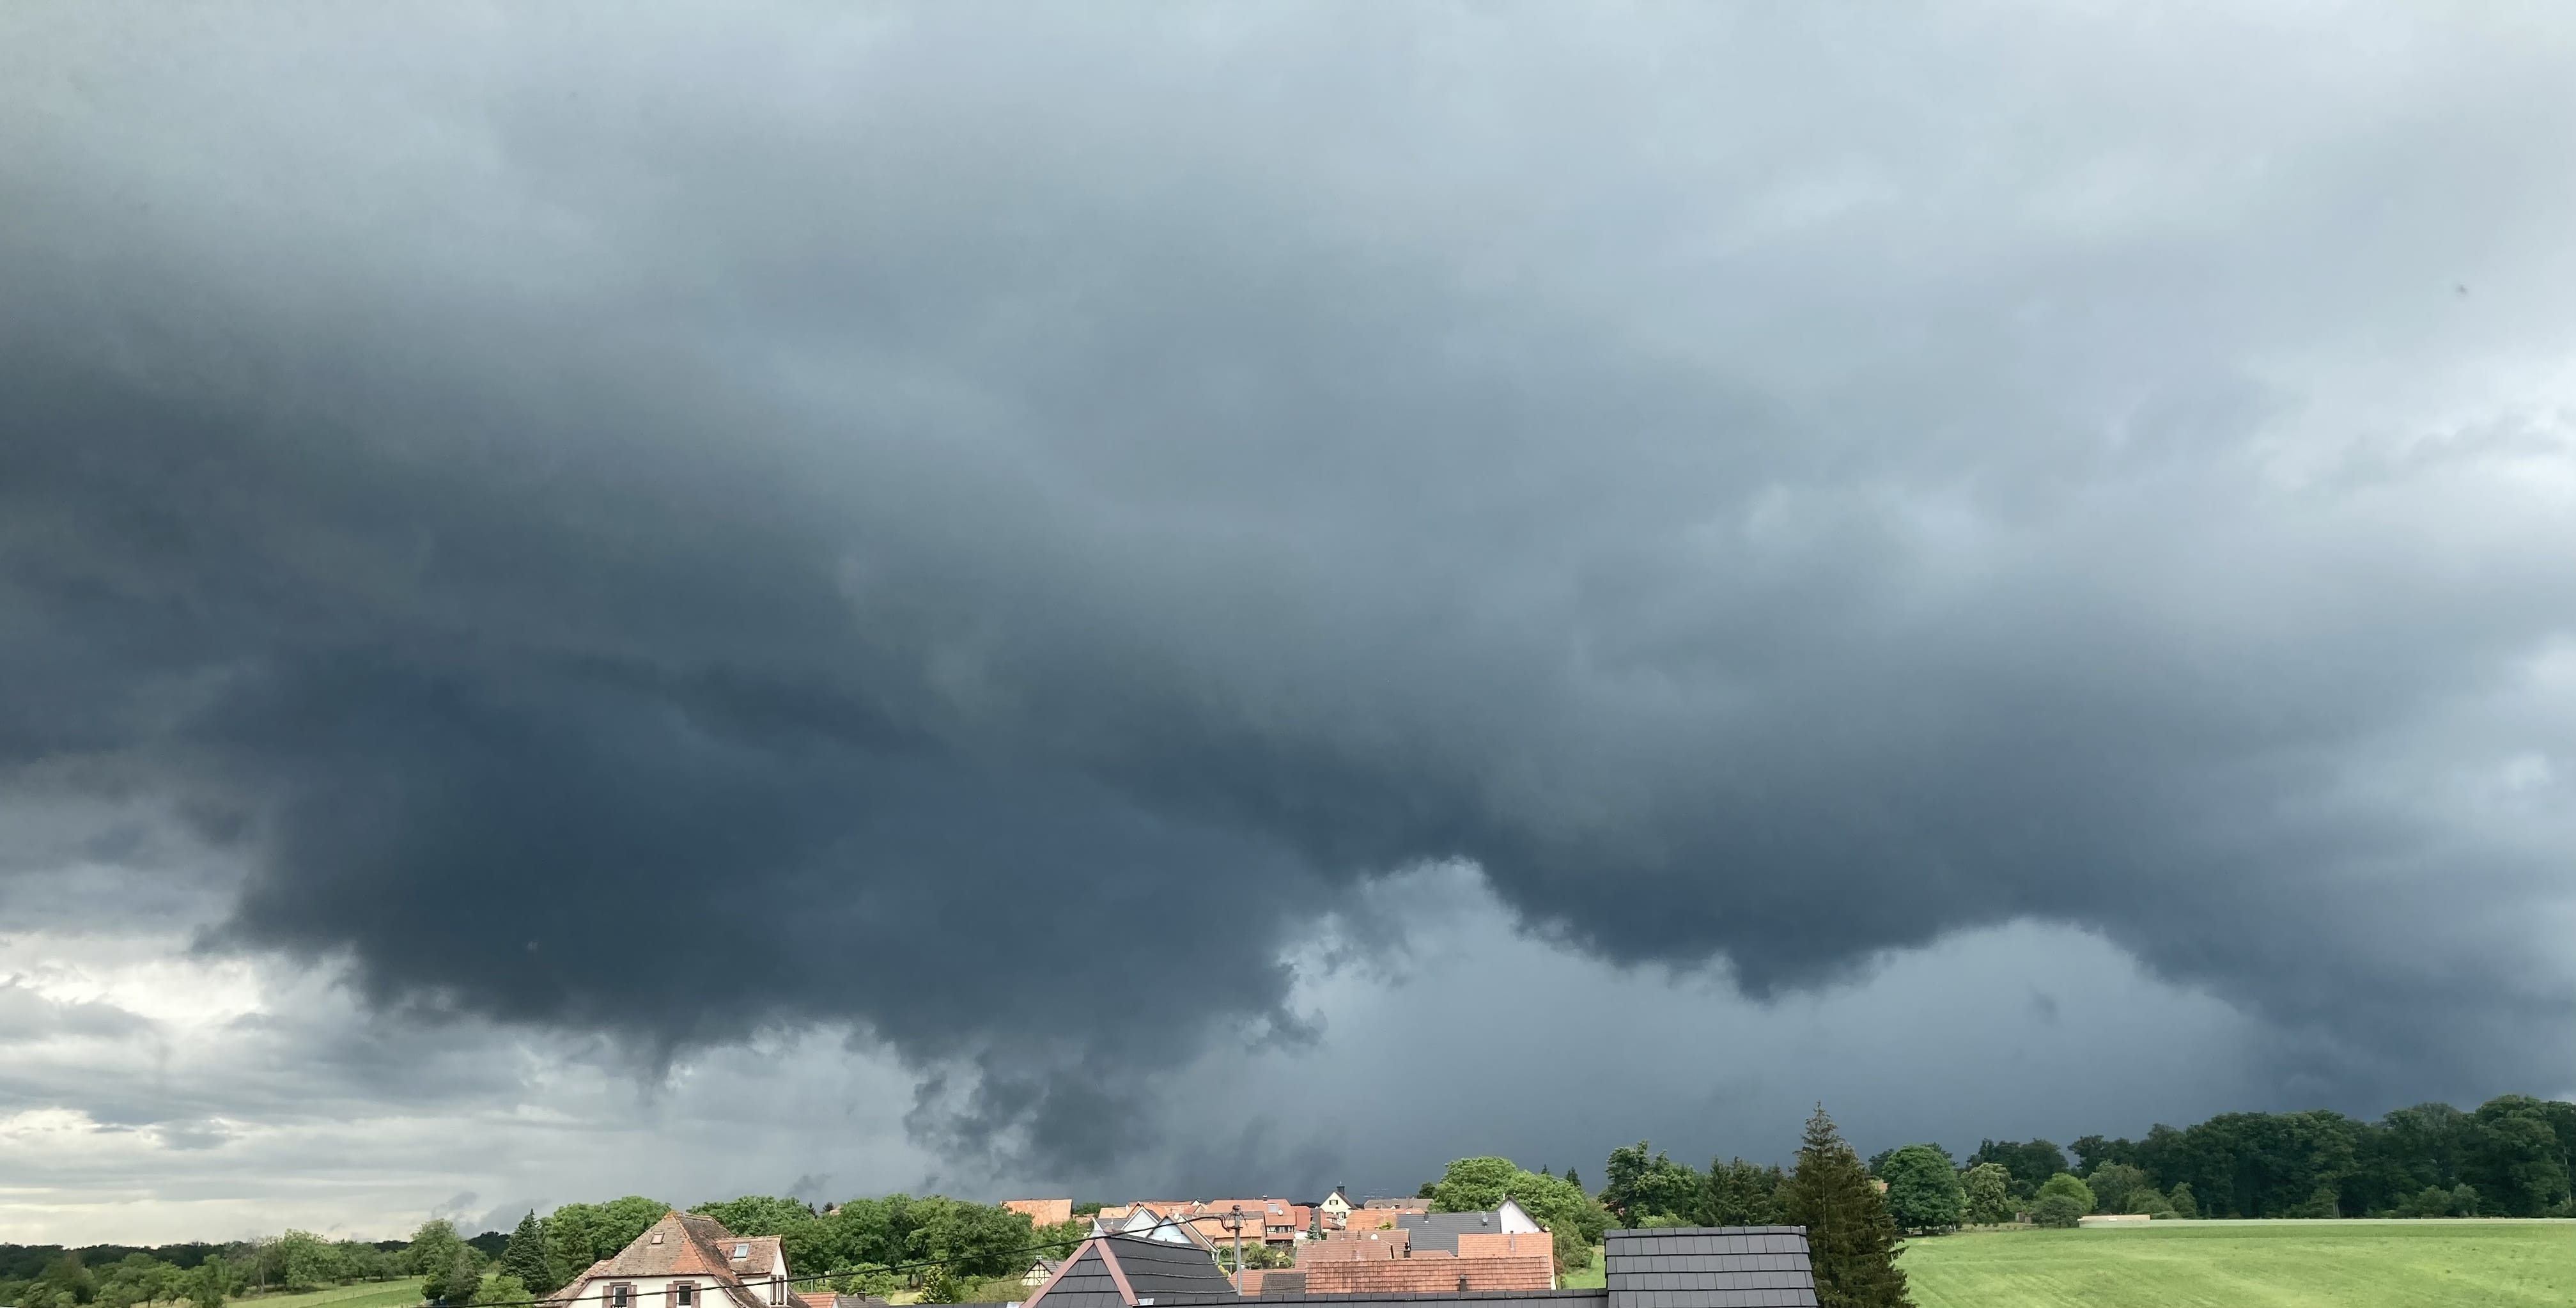 Formation du premier orage en Alsace du nord. Premiers coups de tonnerres. 
La souche se déplace vite : forte pluie en dessous et vents fort - 05/06/2022 12:10 - Baptiste Nimmler